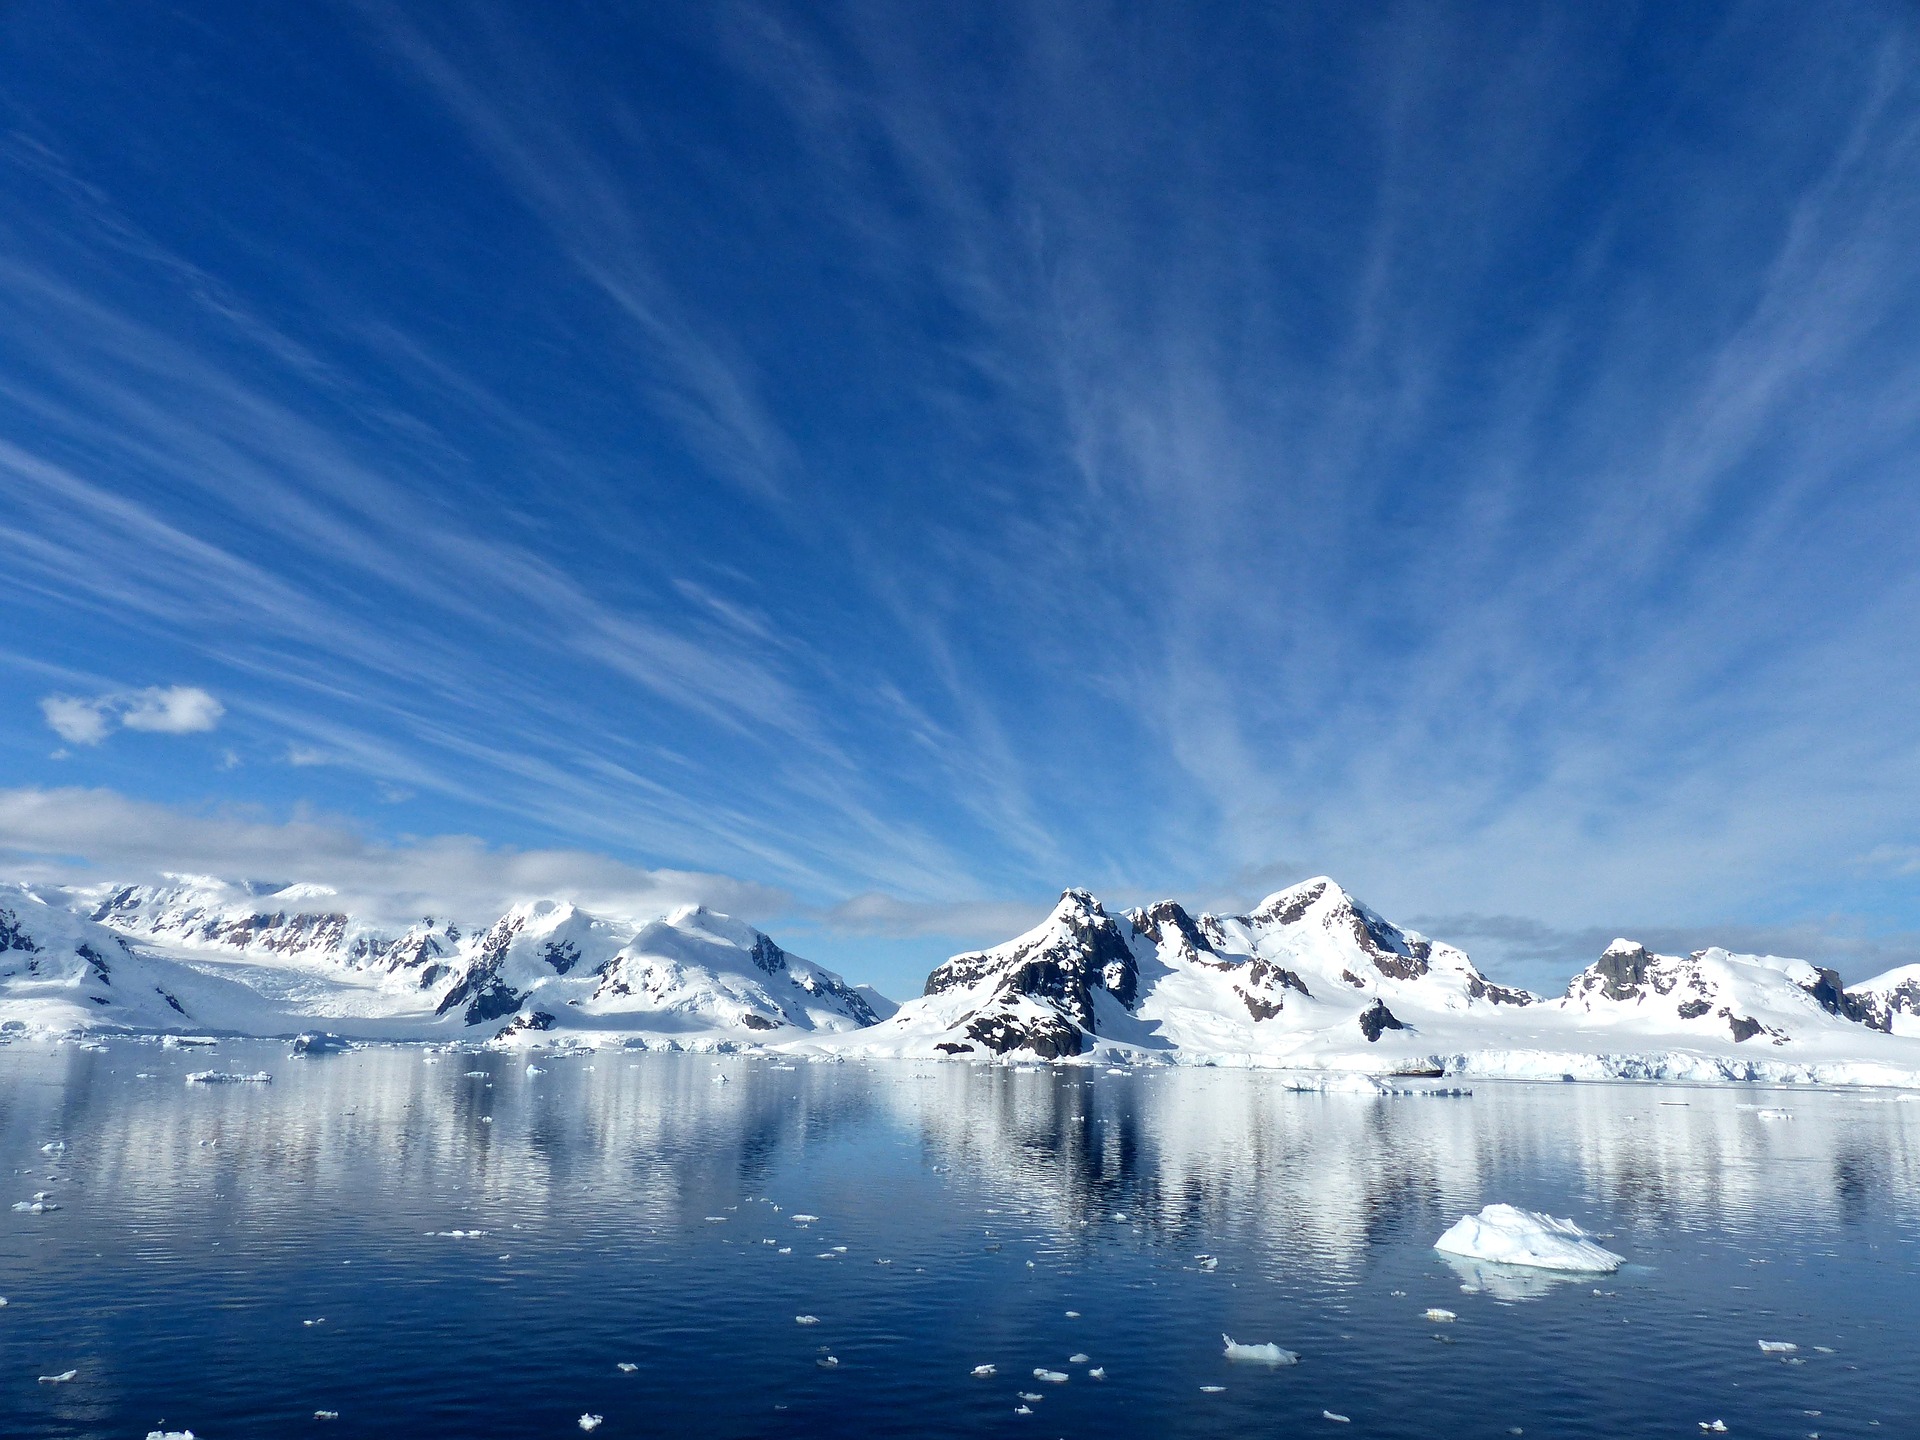 Metano sale del fondo del mar en la Antártida, y eso no es bueno  para el calentamiento global.